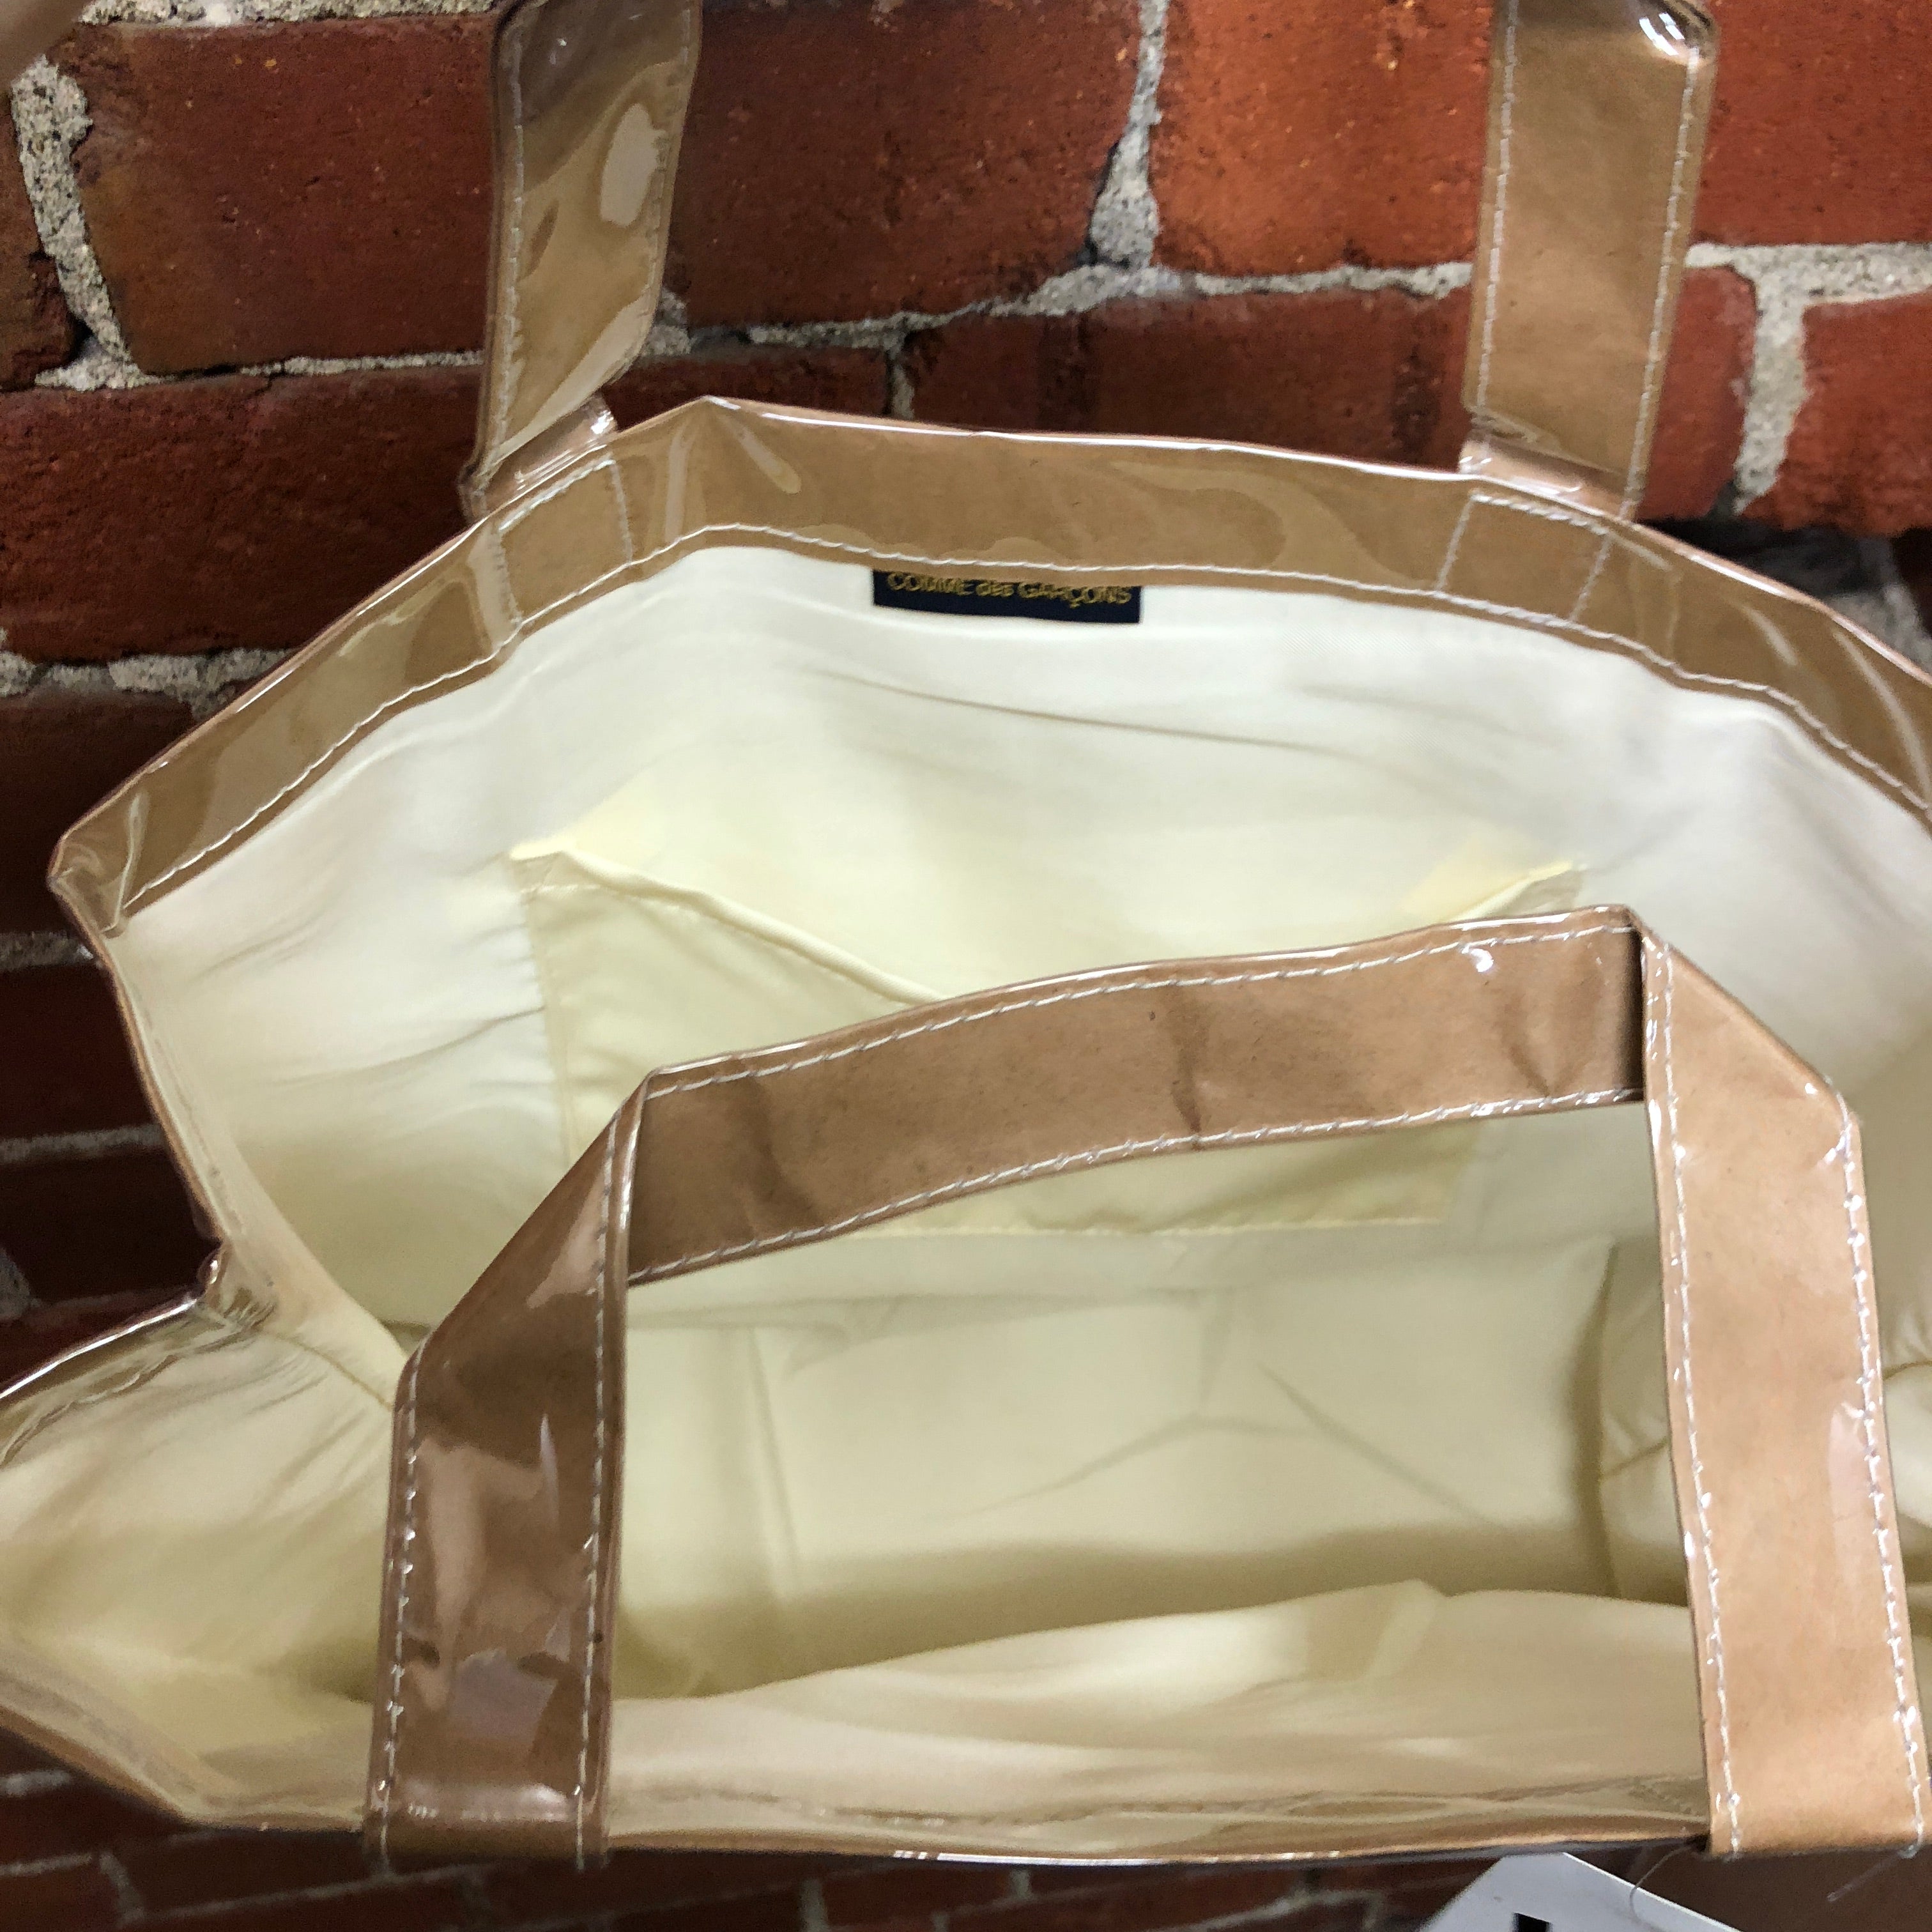 COMME DES GARCONS PVC covered paper handbag